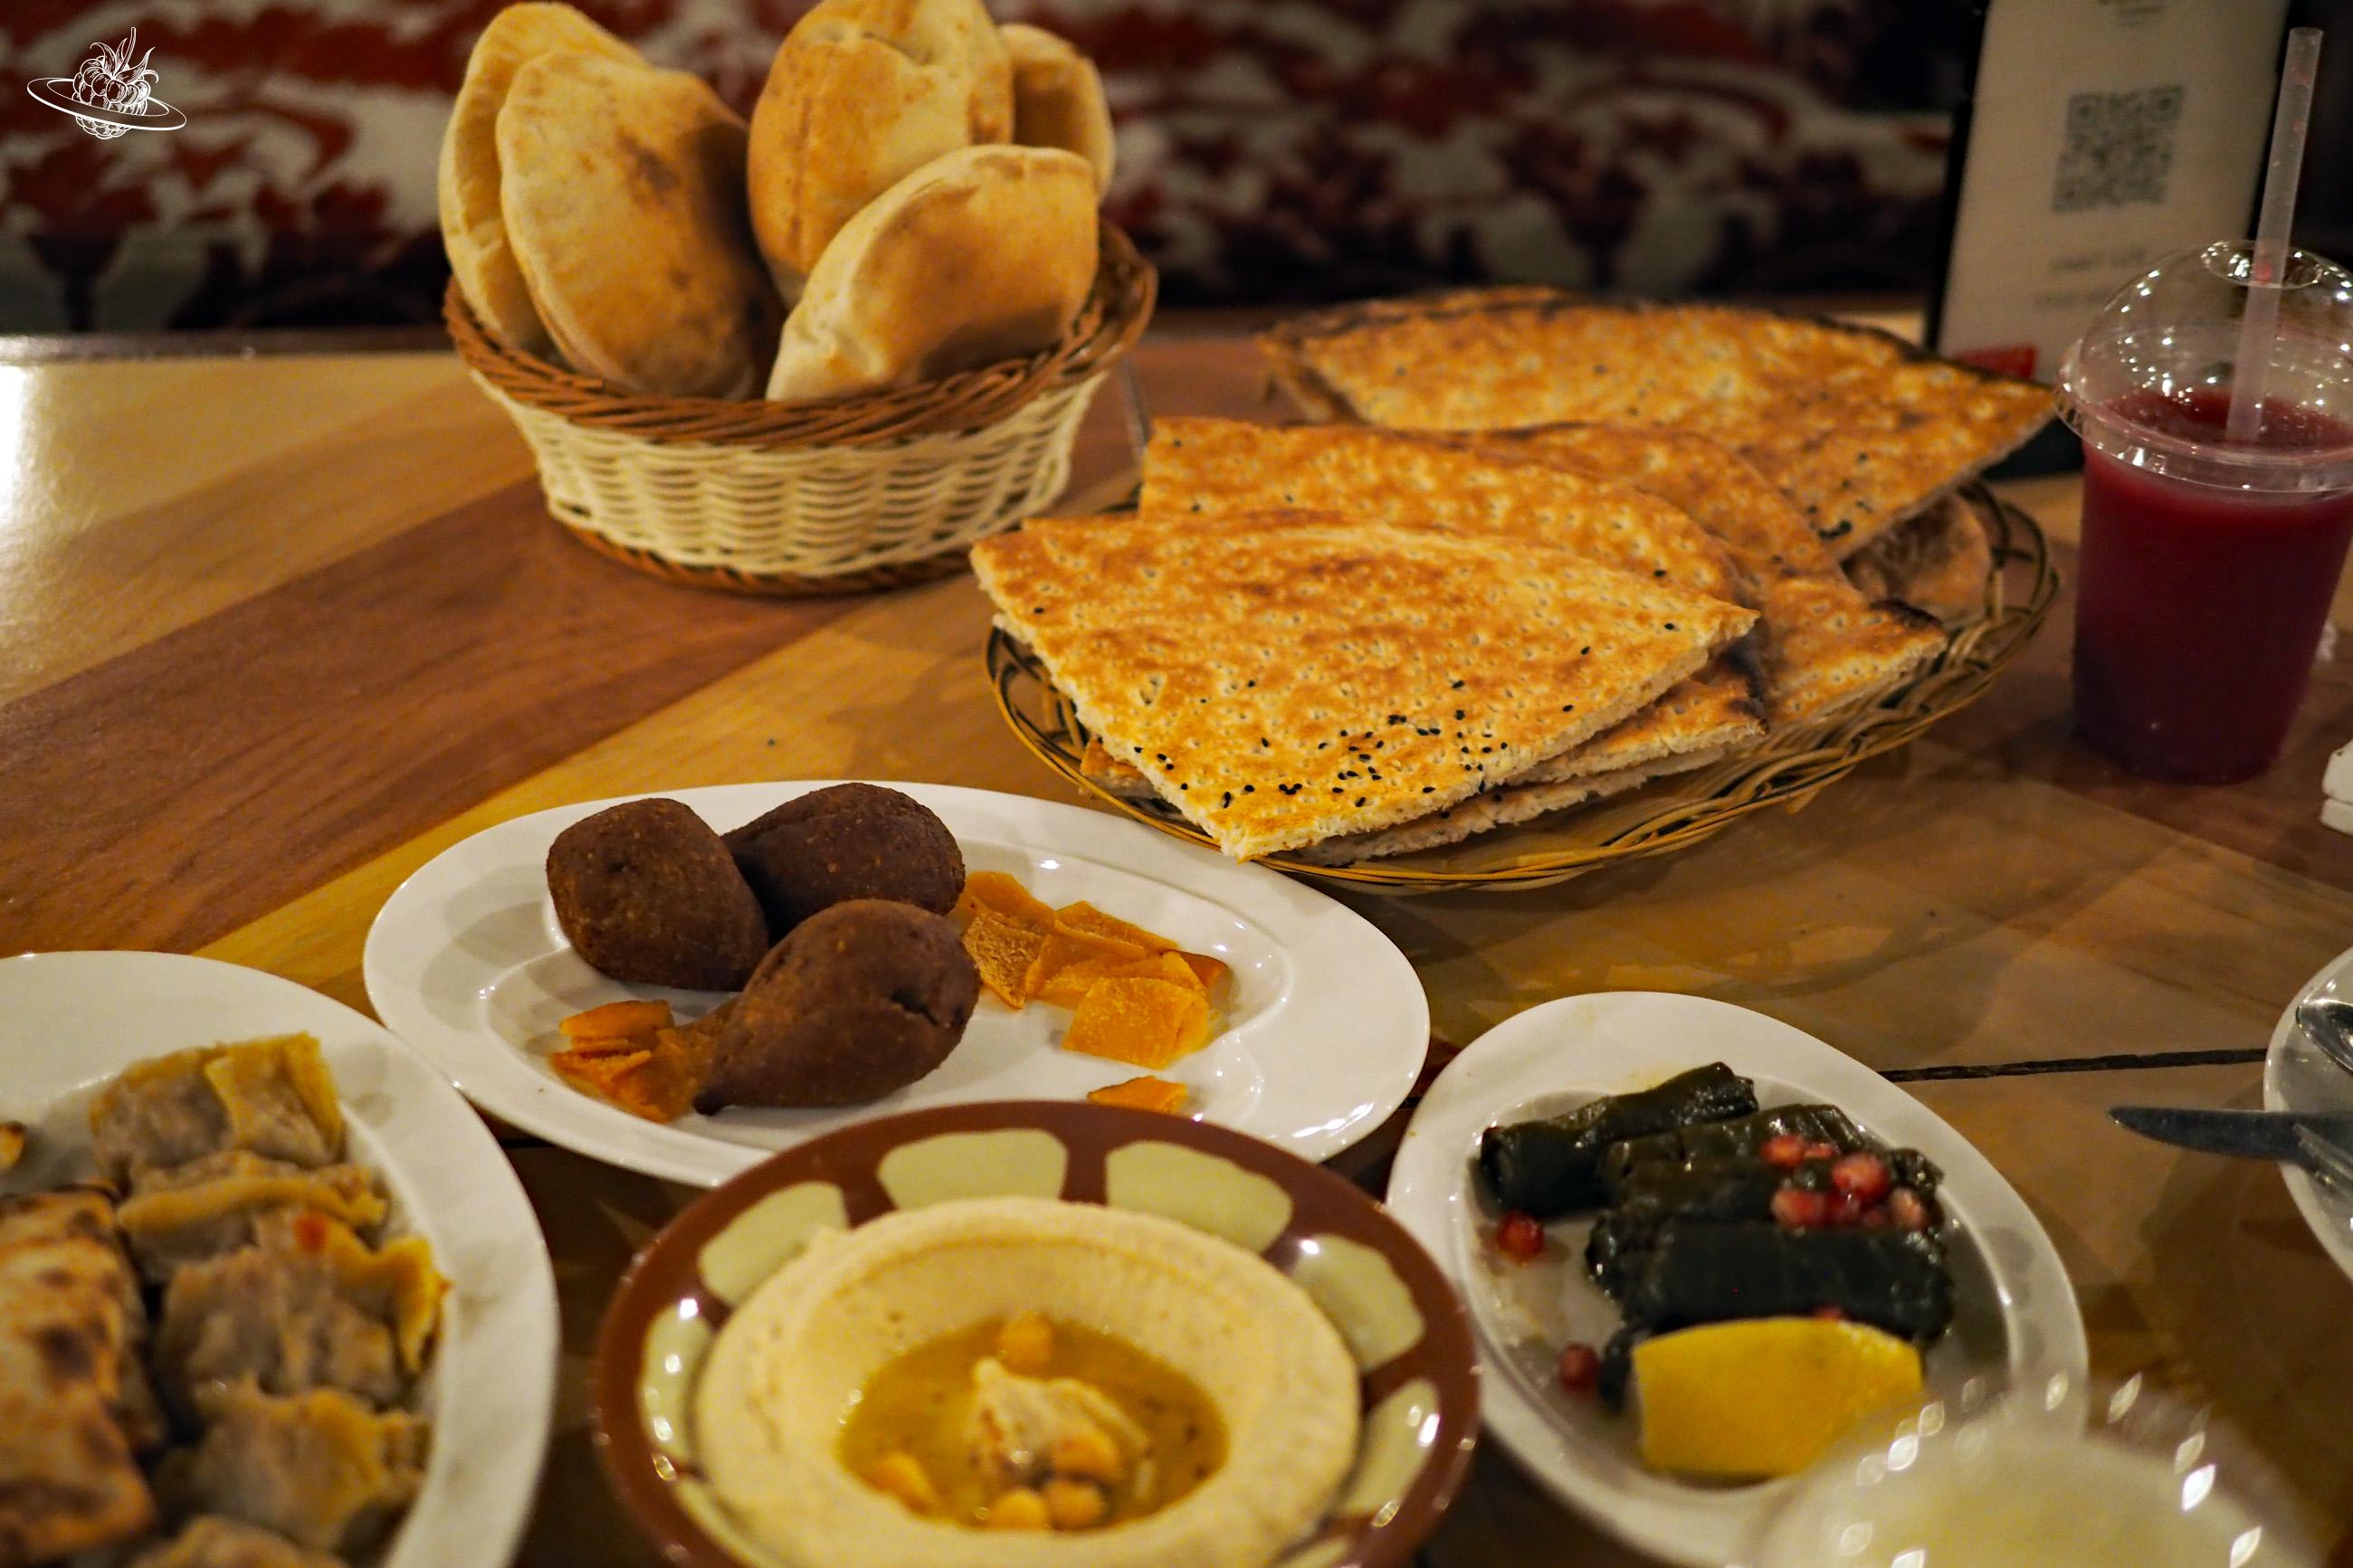 Arabisches Essen und Getränk auf dem Tisch